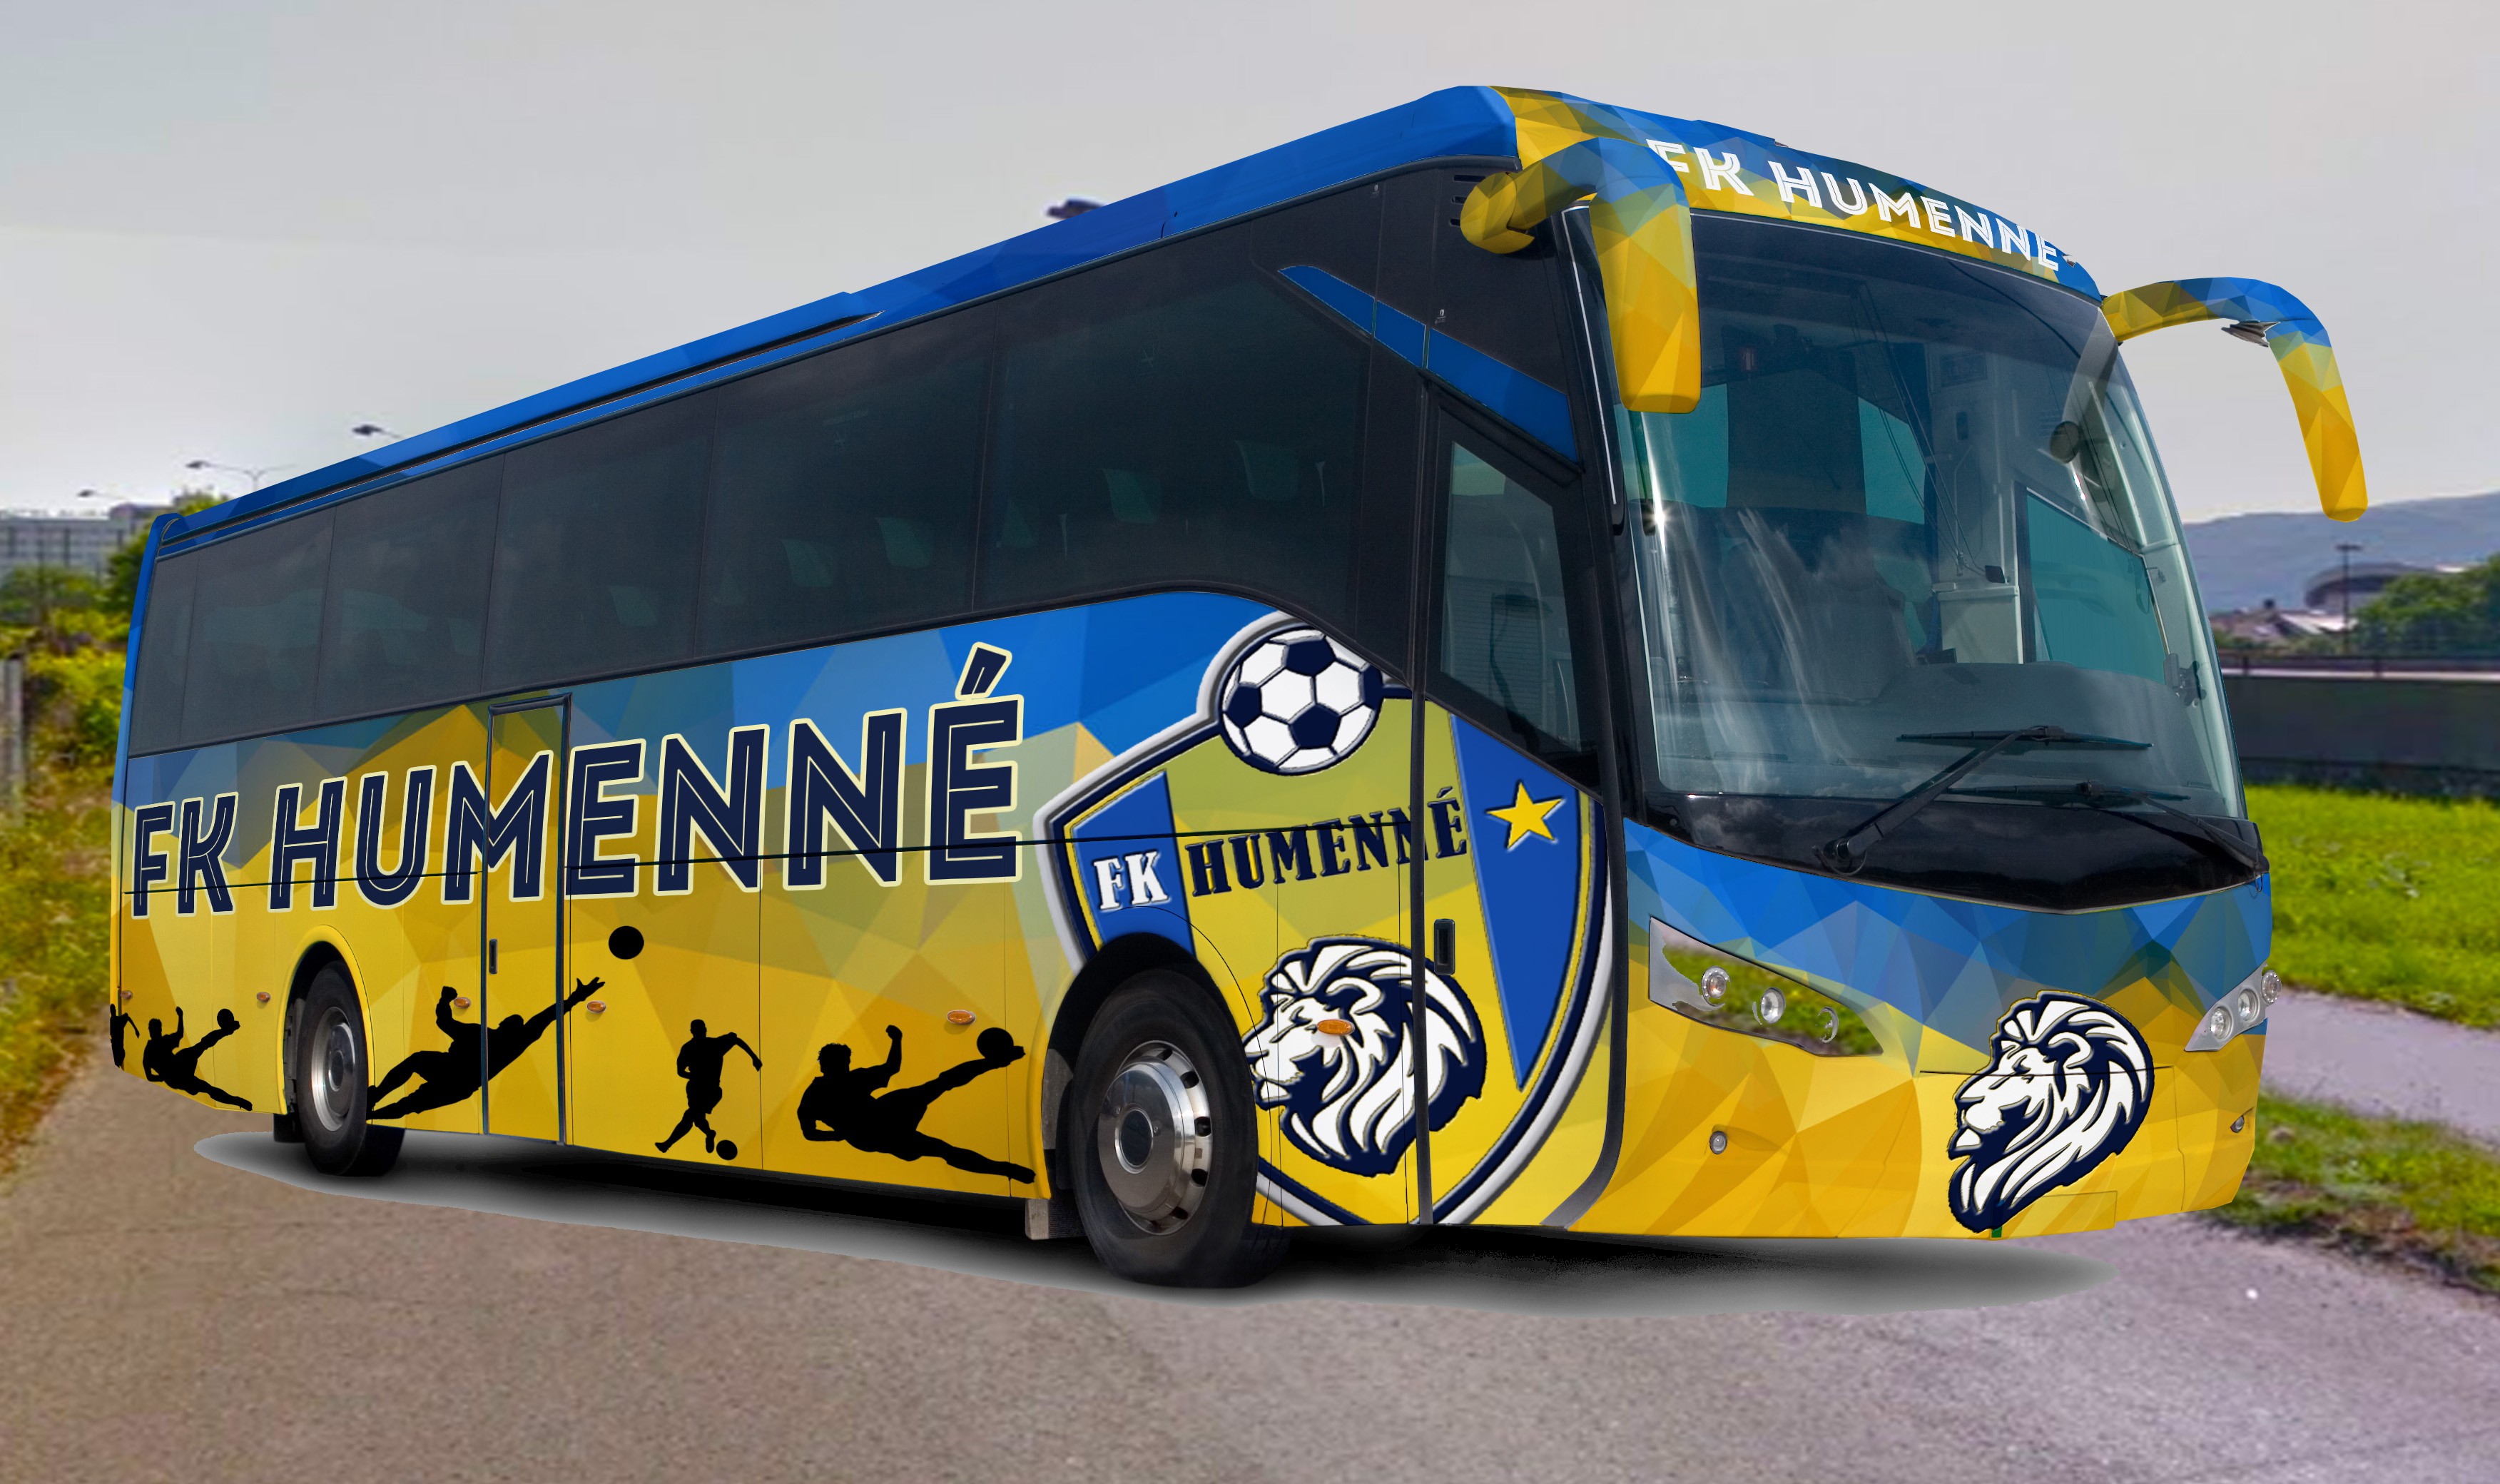 FK Humenné bus trip